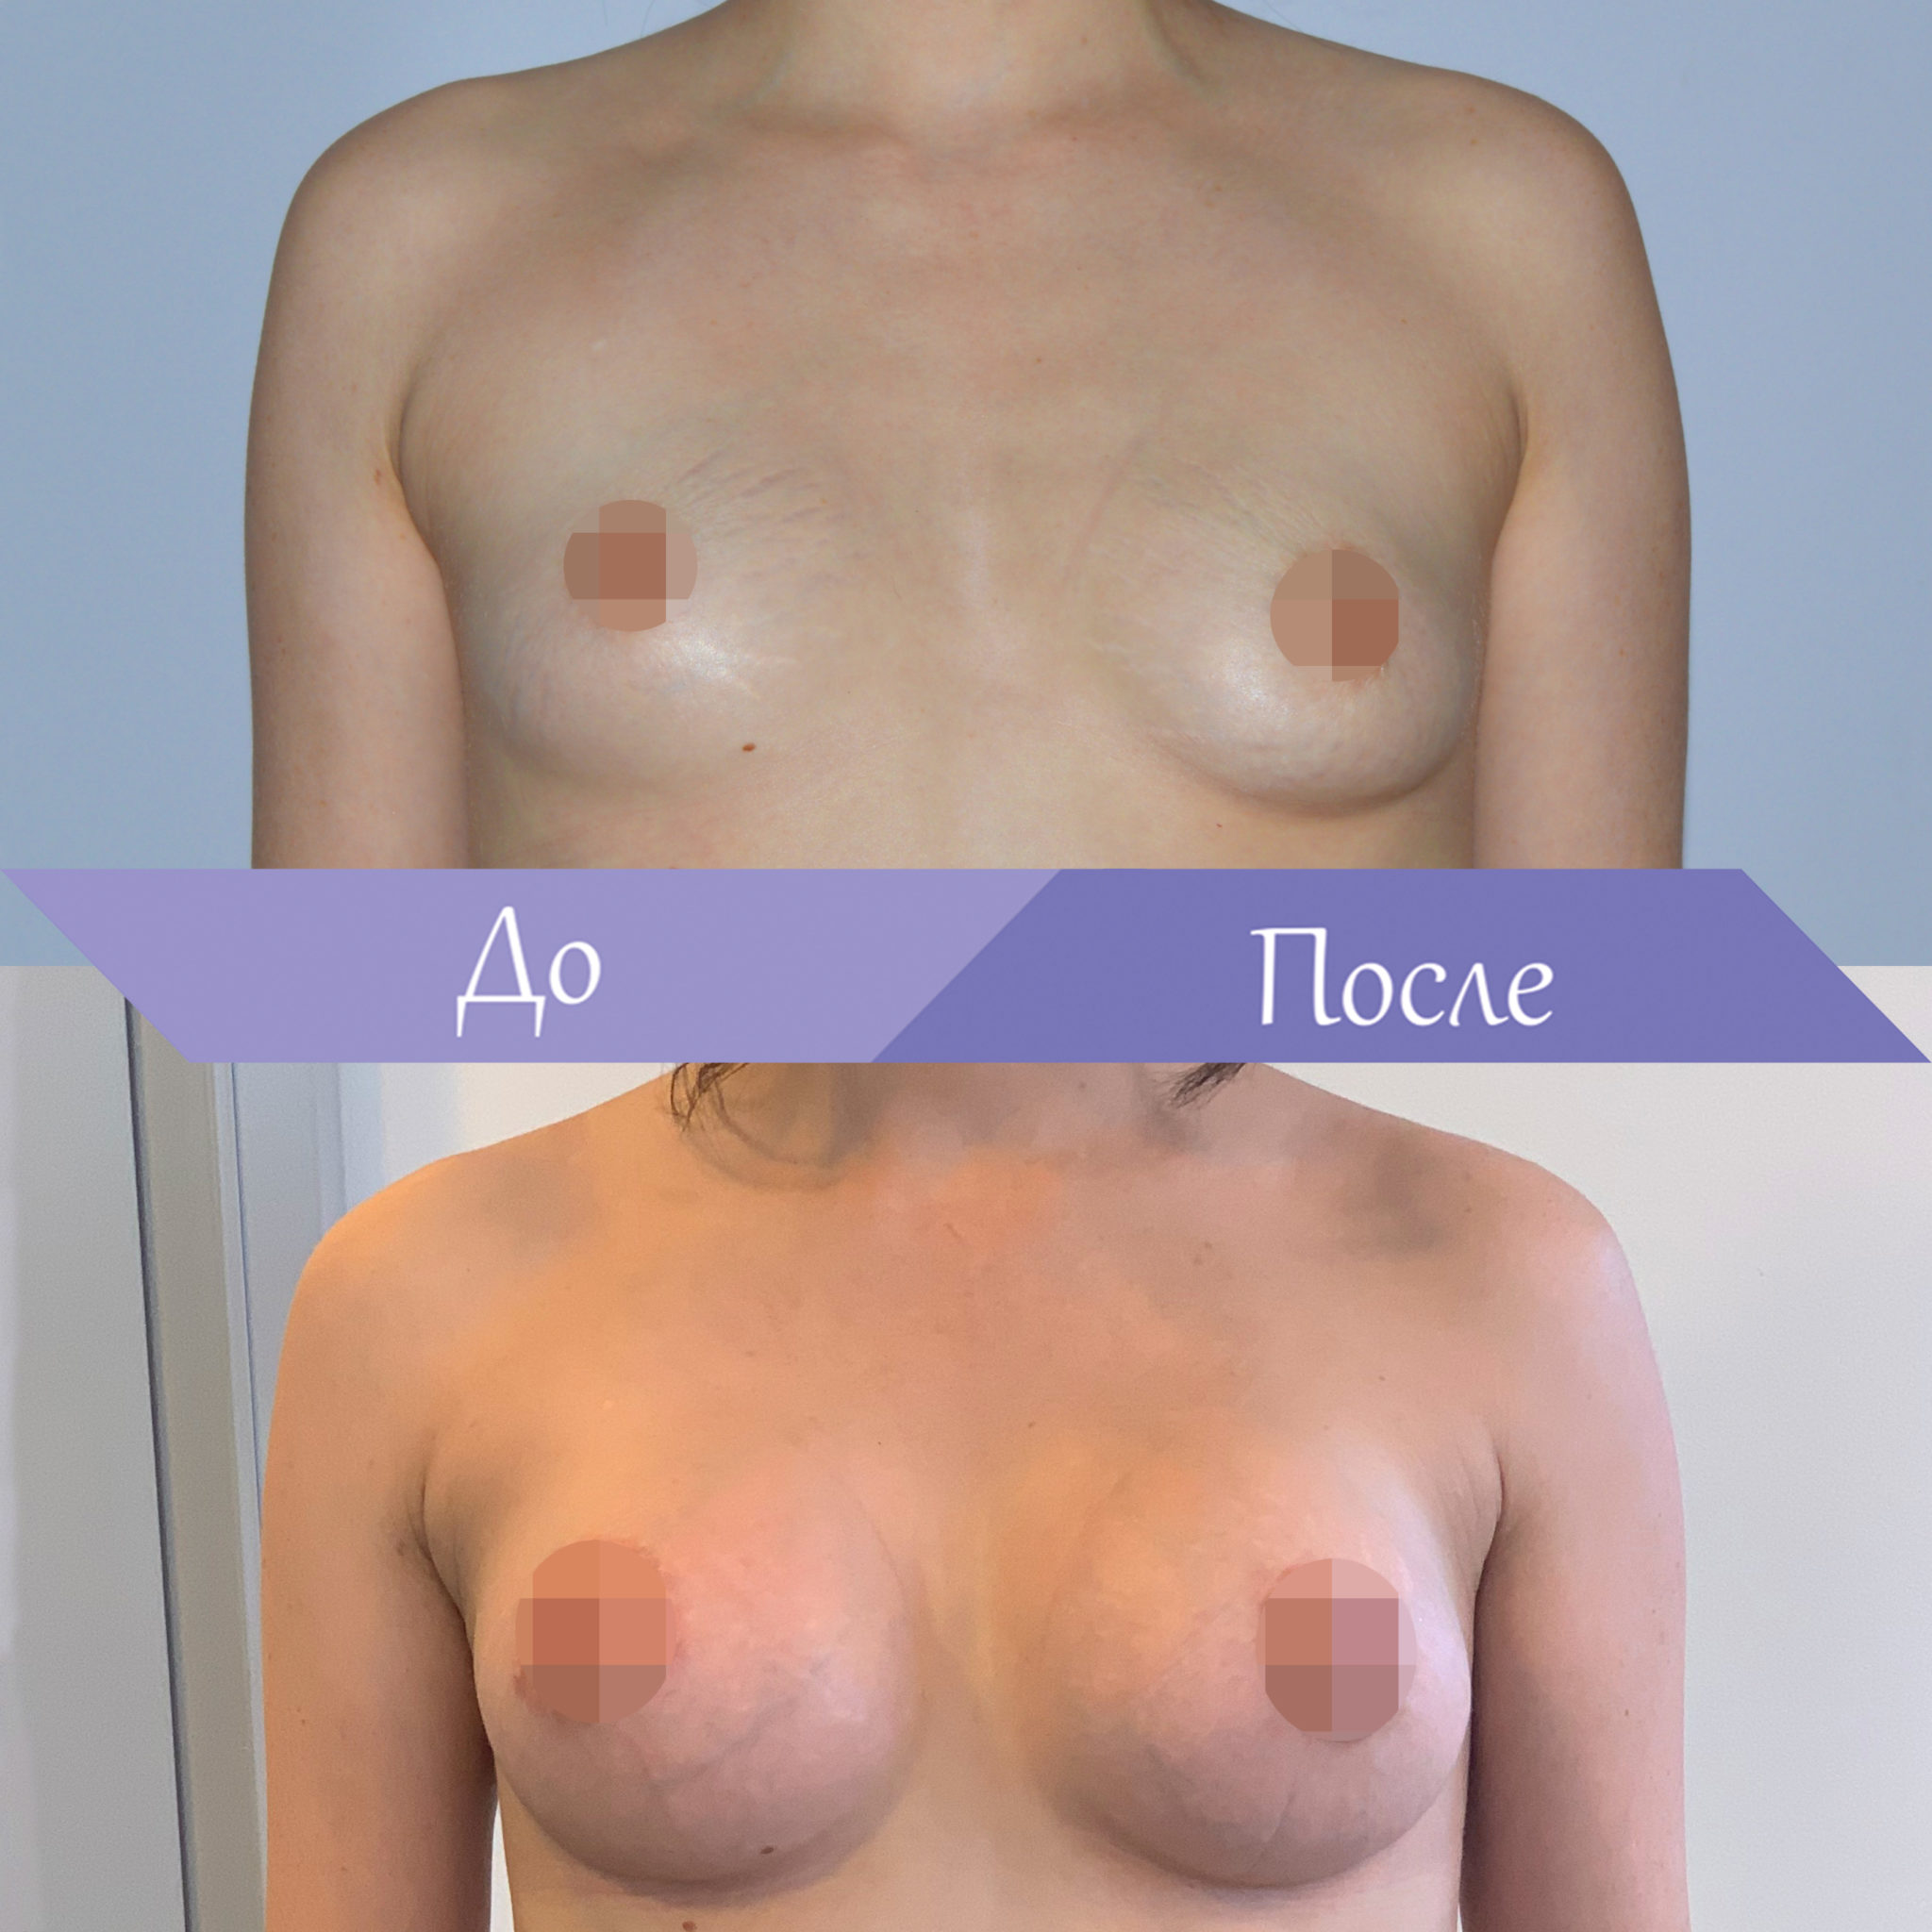 асимметрия груди у женщин форум фото 108